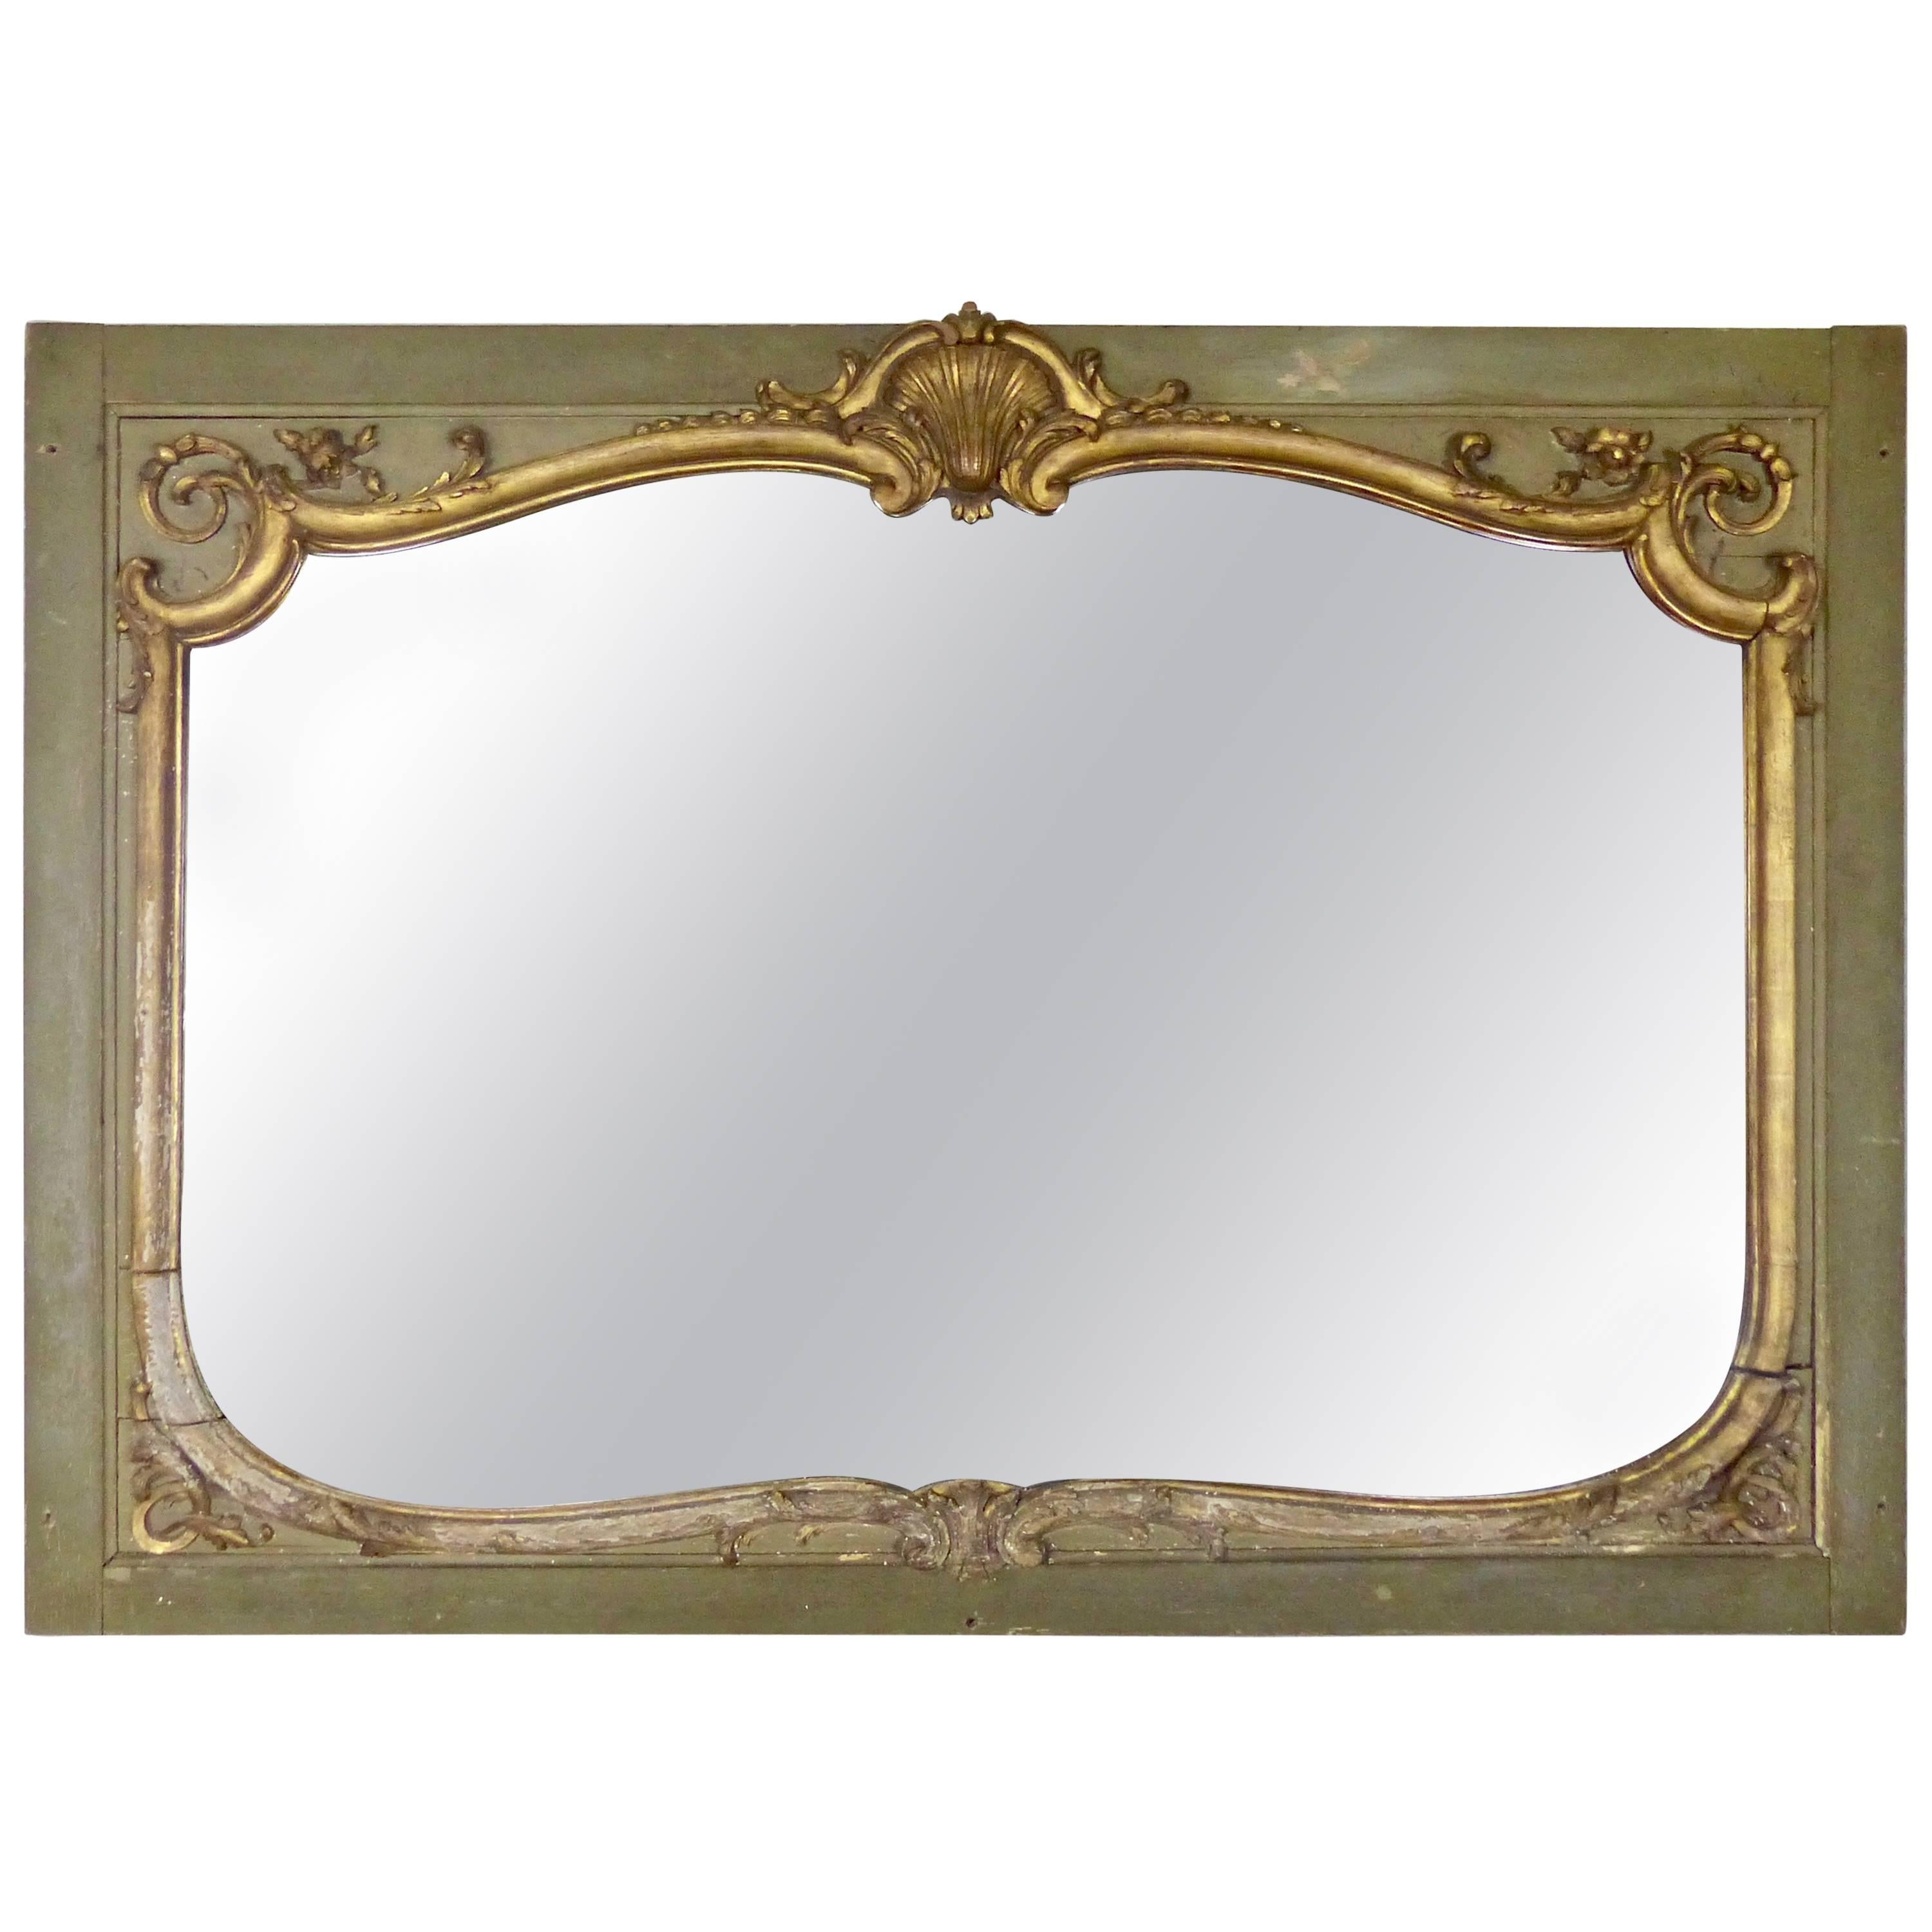 Antique Ornate Art Nouveau Style Giltwood Mirror